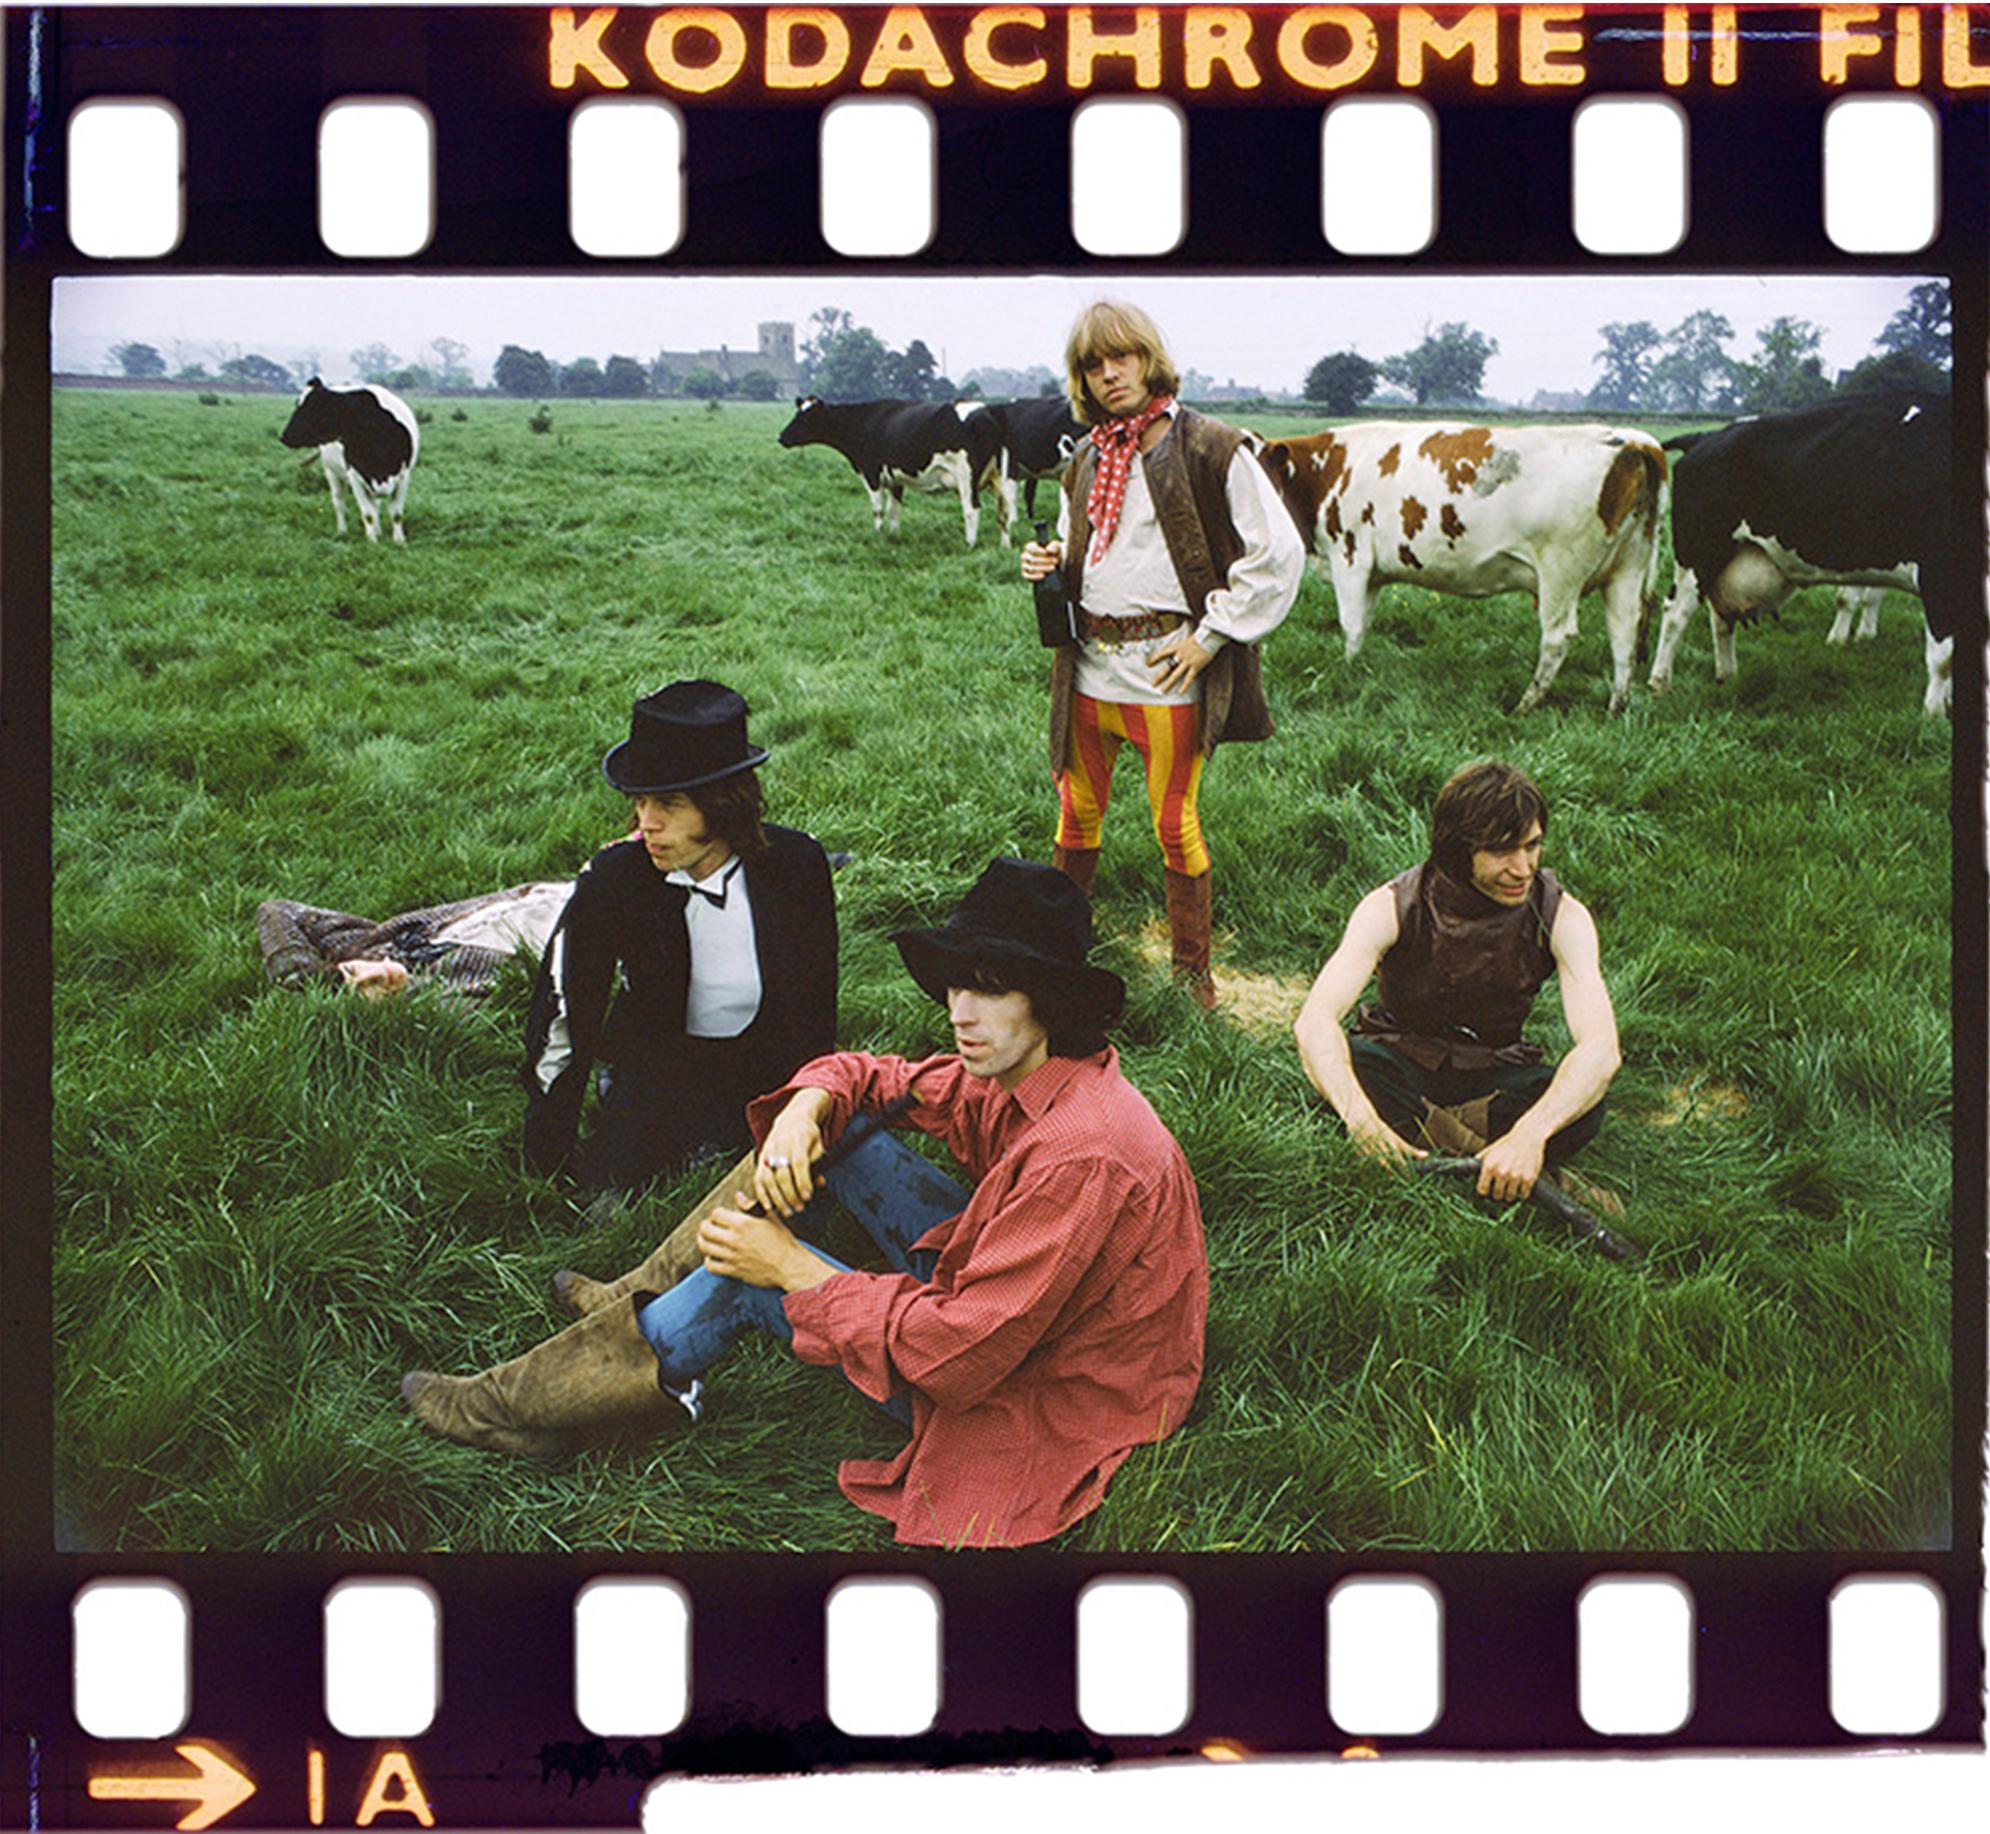 Michael Joseph Portrait Photograph – Die Rolling Stones „Stones and Cows“ London 1968